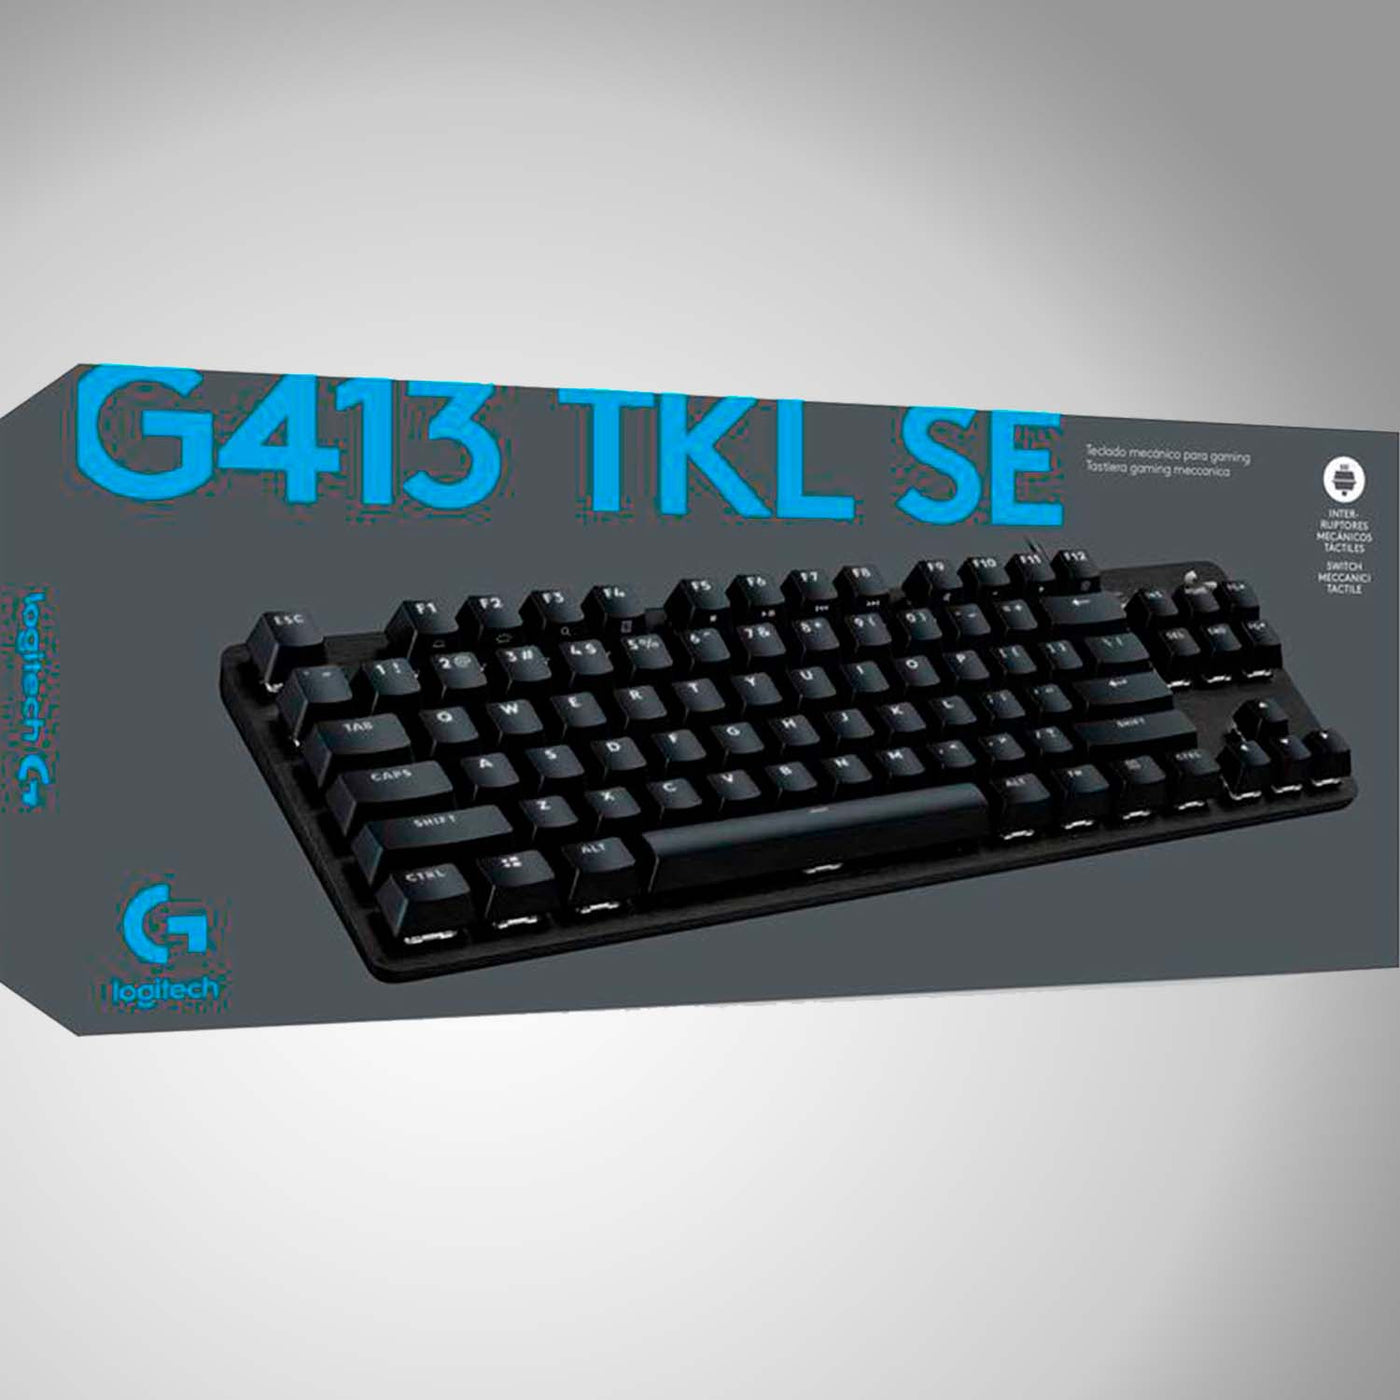 Logitech G413 TKL SE Teclado mecánico para juegos, teclado retroiluminado  compacto con interruptores mecánicos táctiles, anti-fantasma, compatible  con